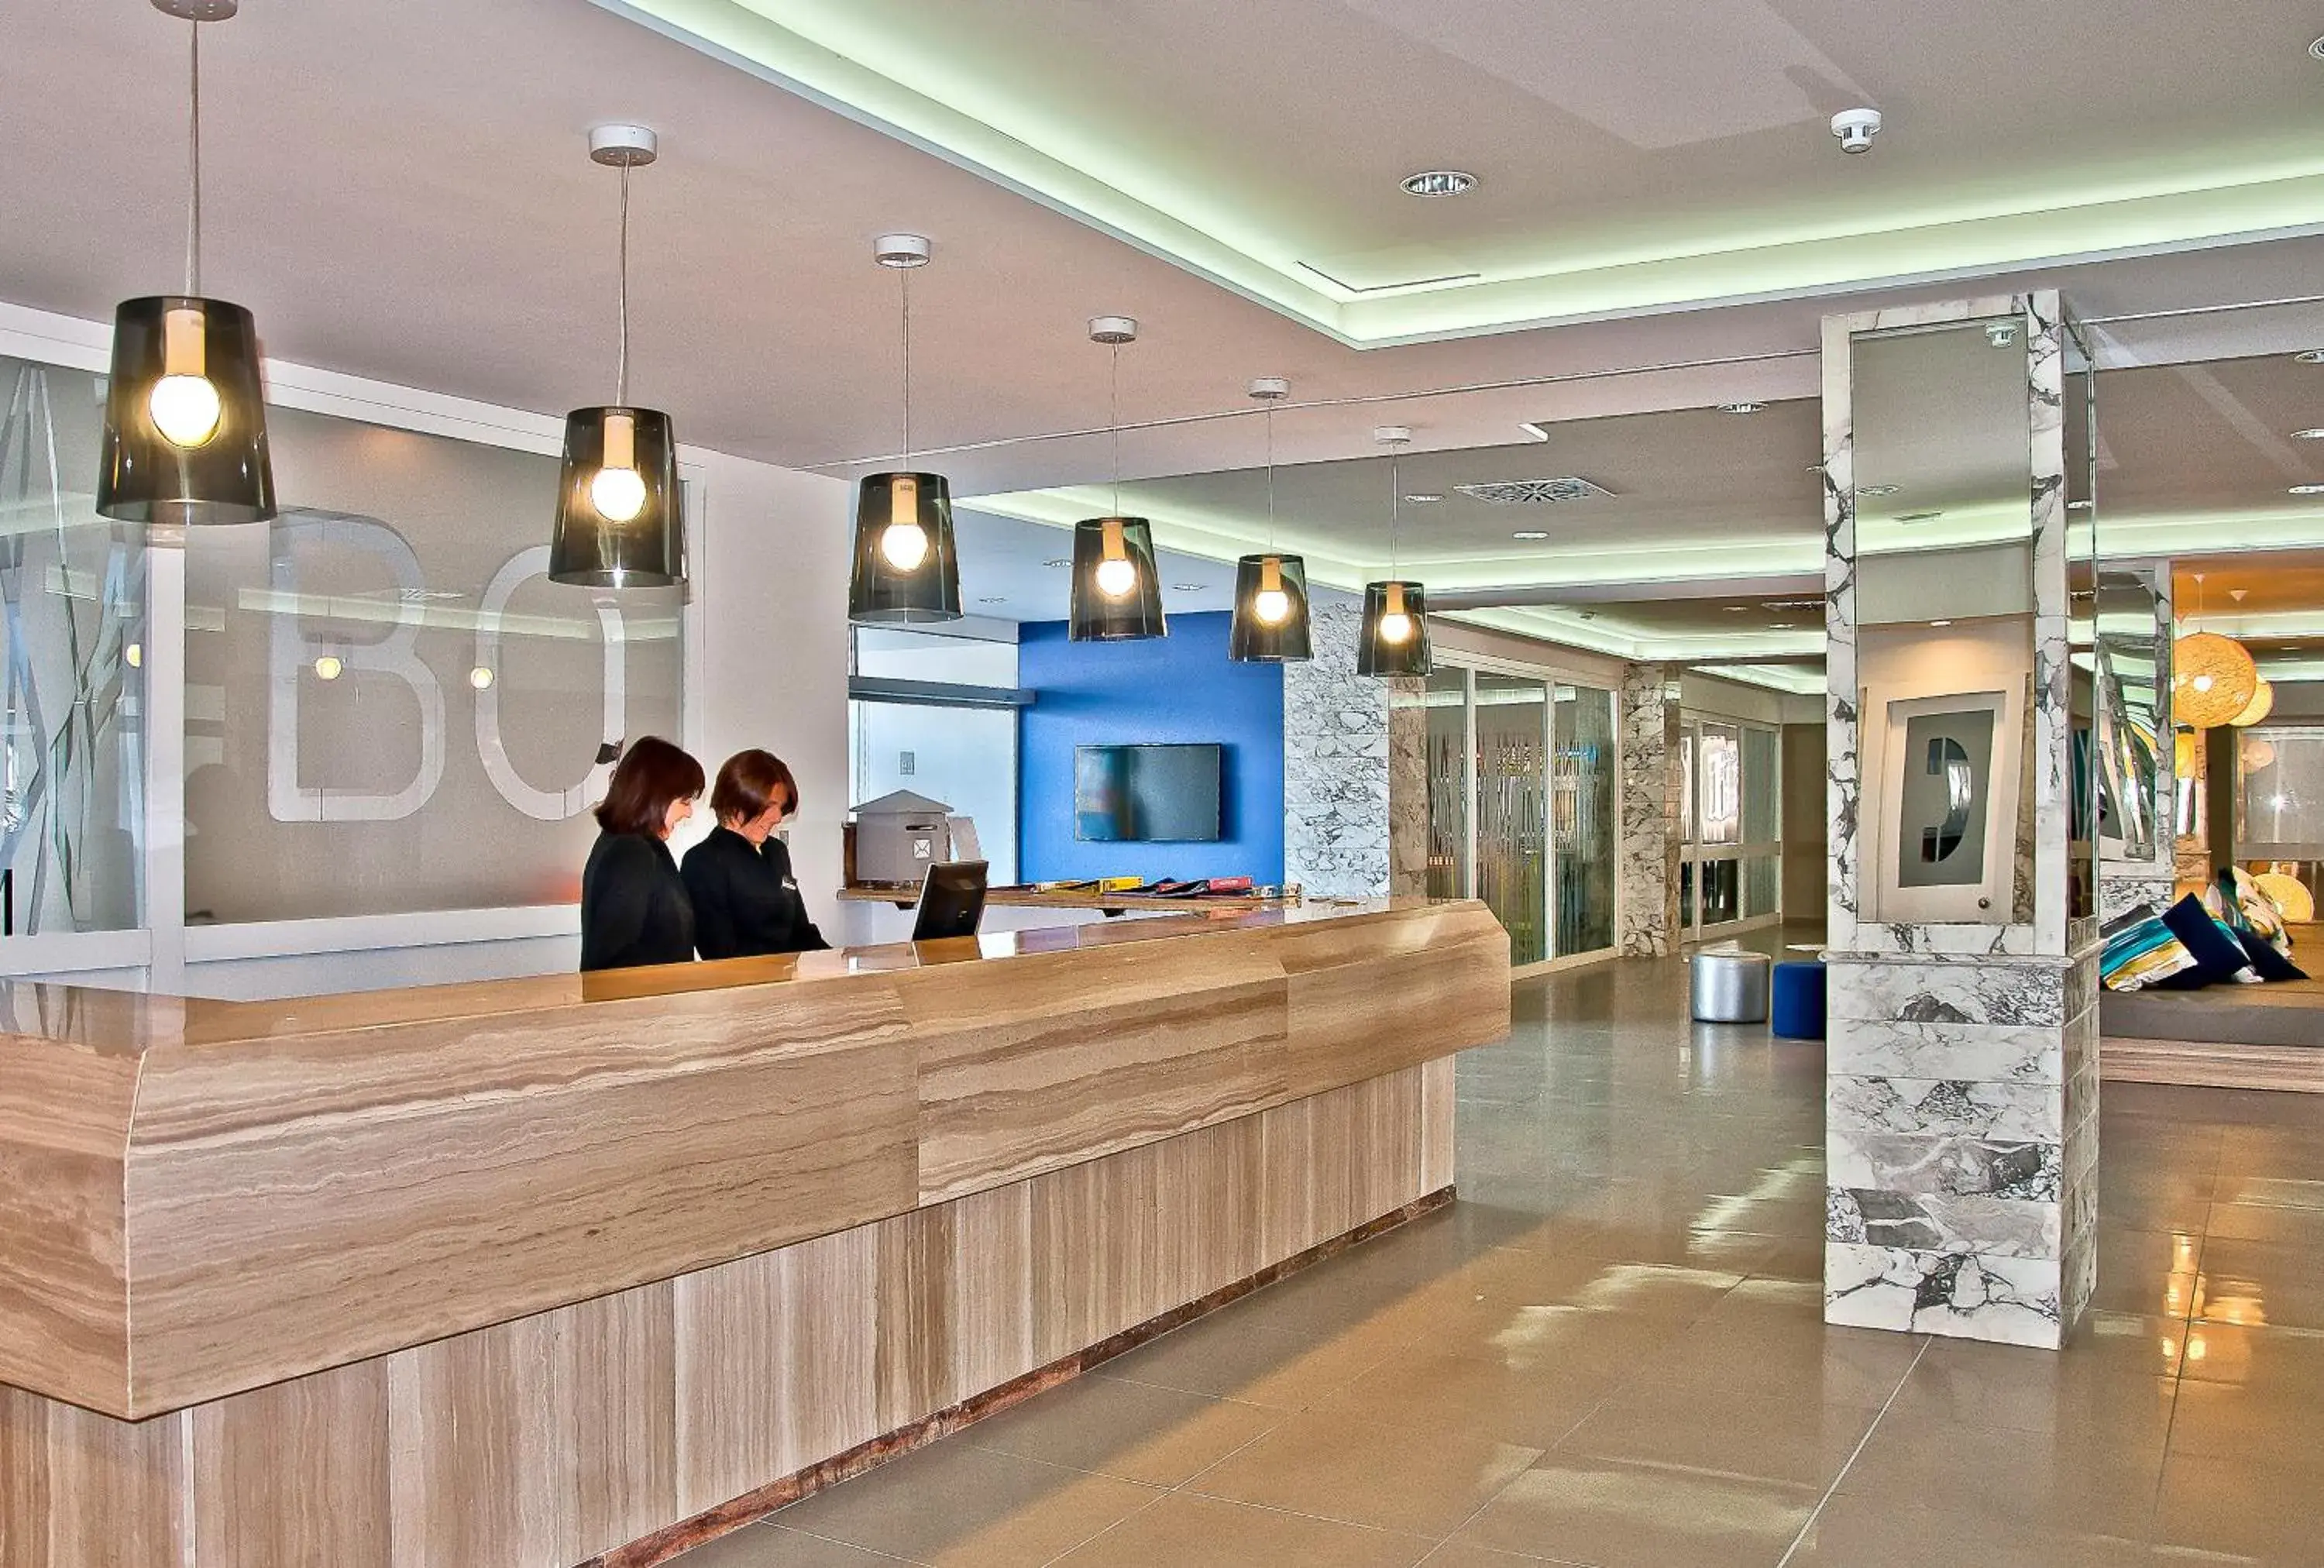 Lobby or reception, Lobby/Reception in BQ Delfín Azul Hotel